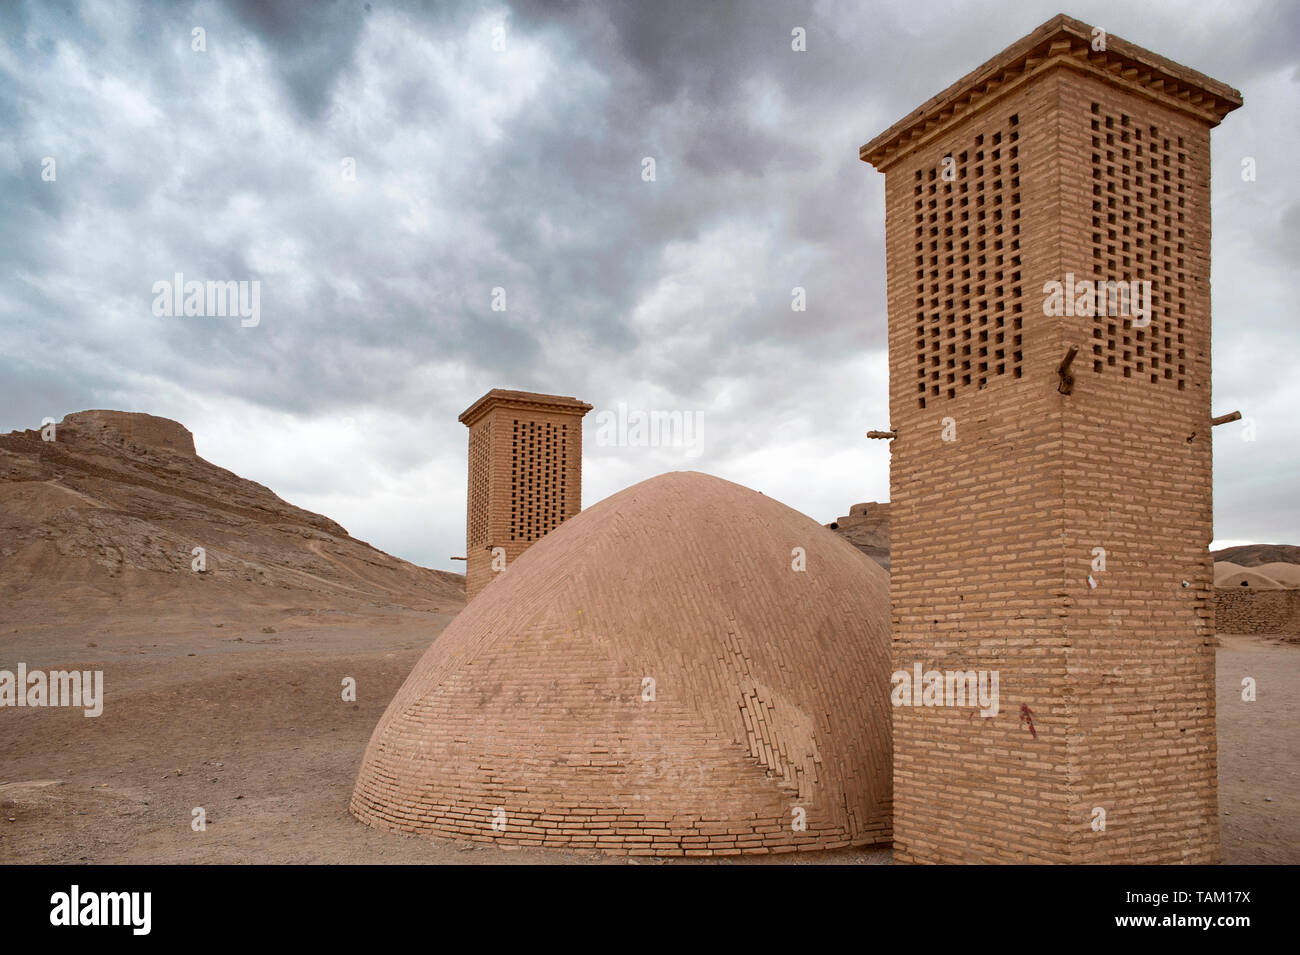 Las torres de viento utilizados como un sistema de refrigeración natural para el depósito de agua en la arquitectura tradicional iraní. Torre de silencio en el fondo. Yazd, Irán Foto de stock